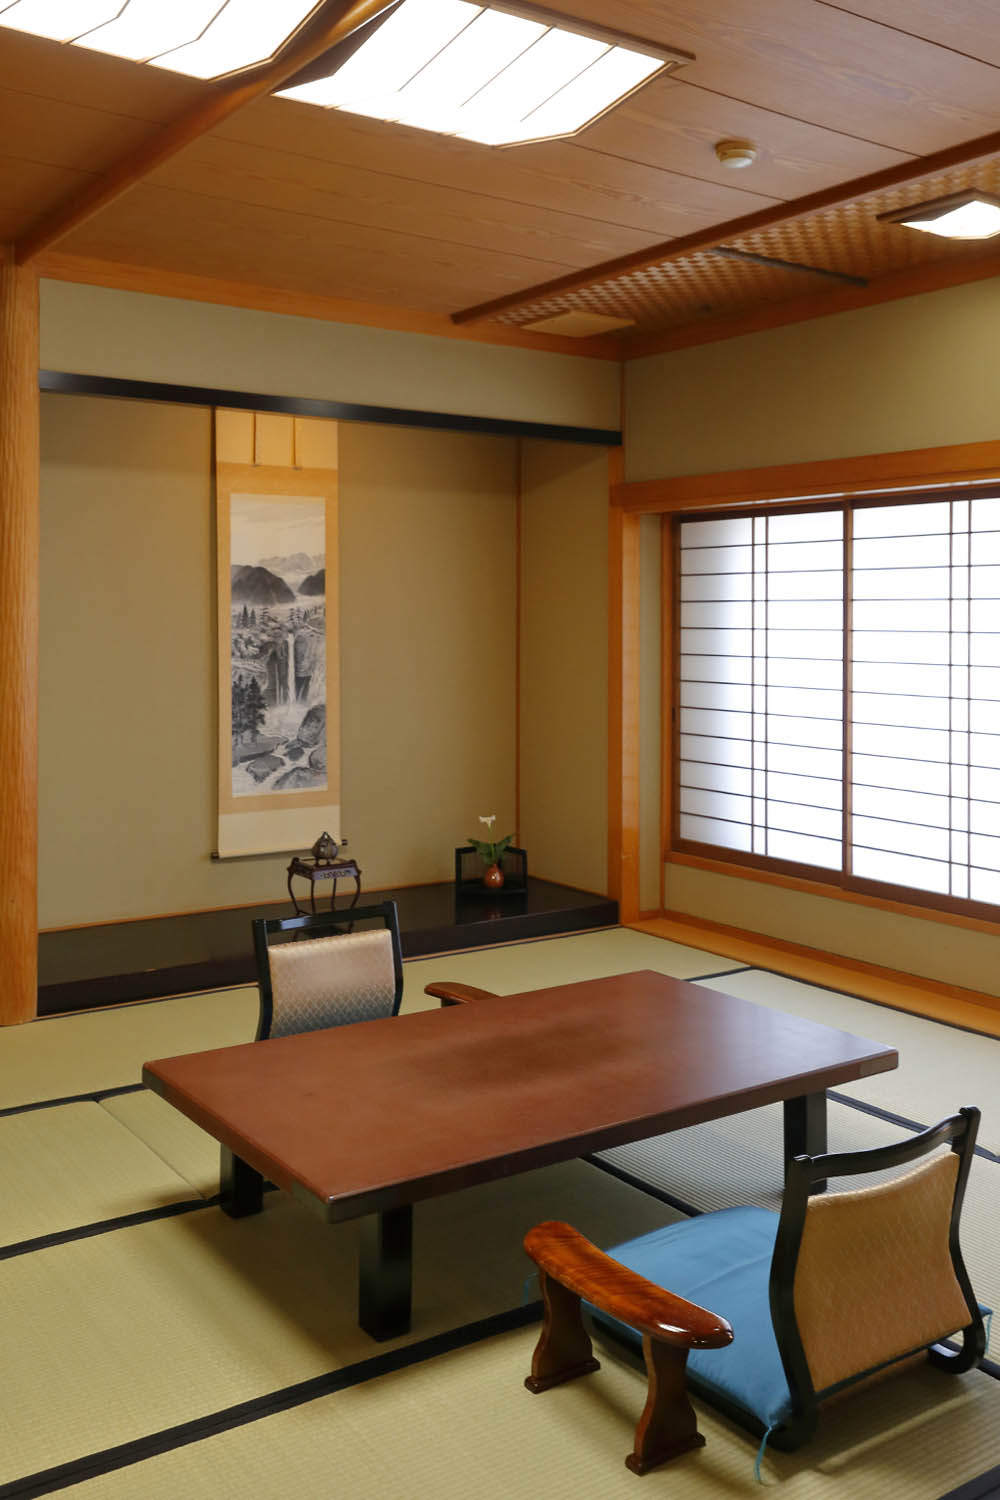 兩間相鄰的日式房間